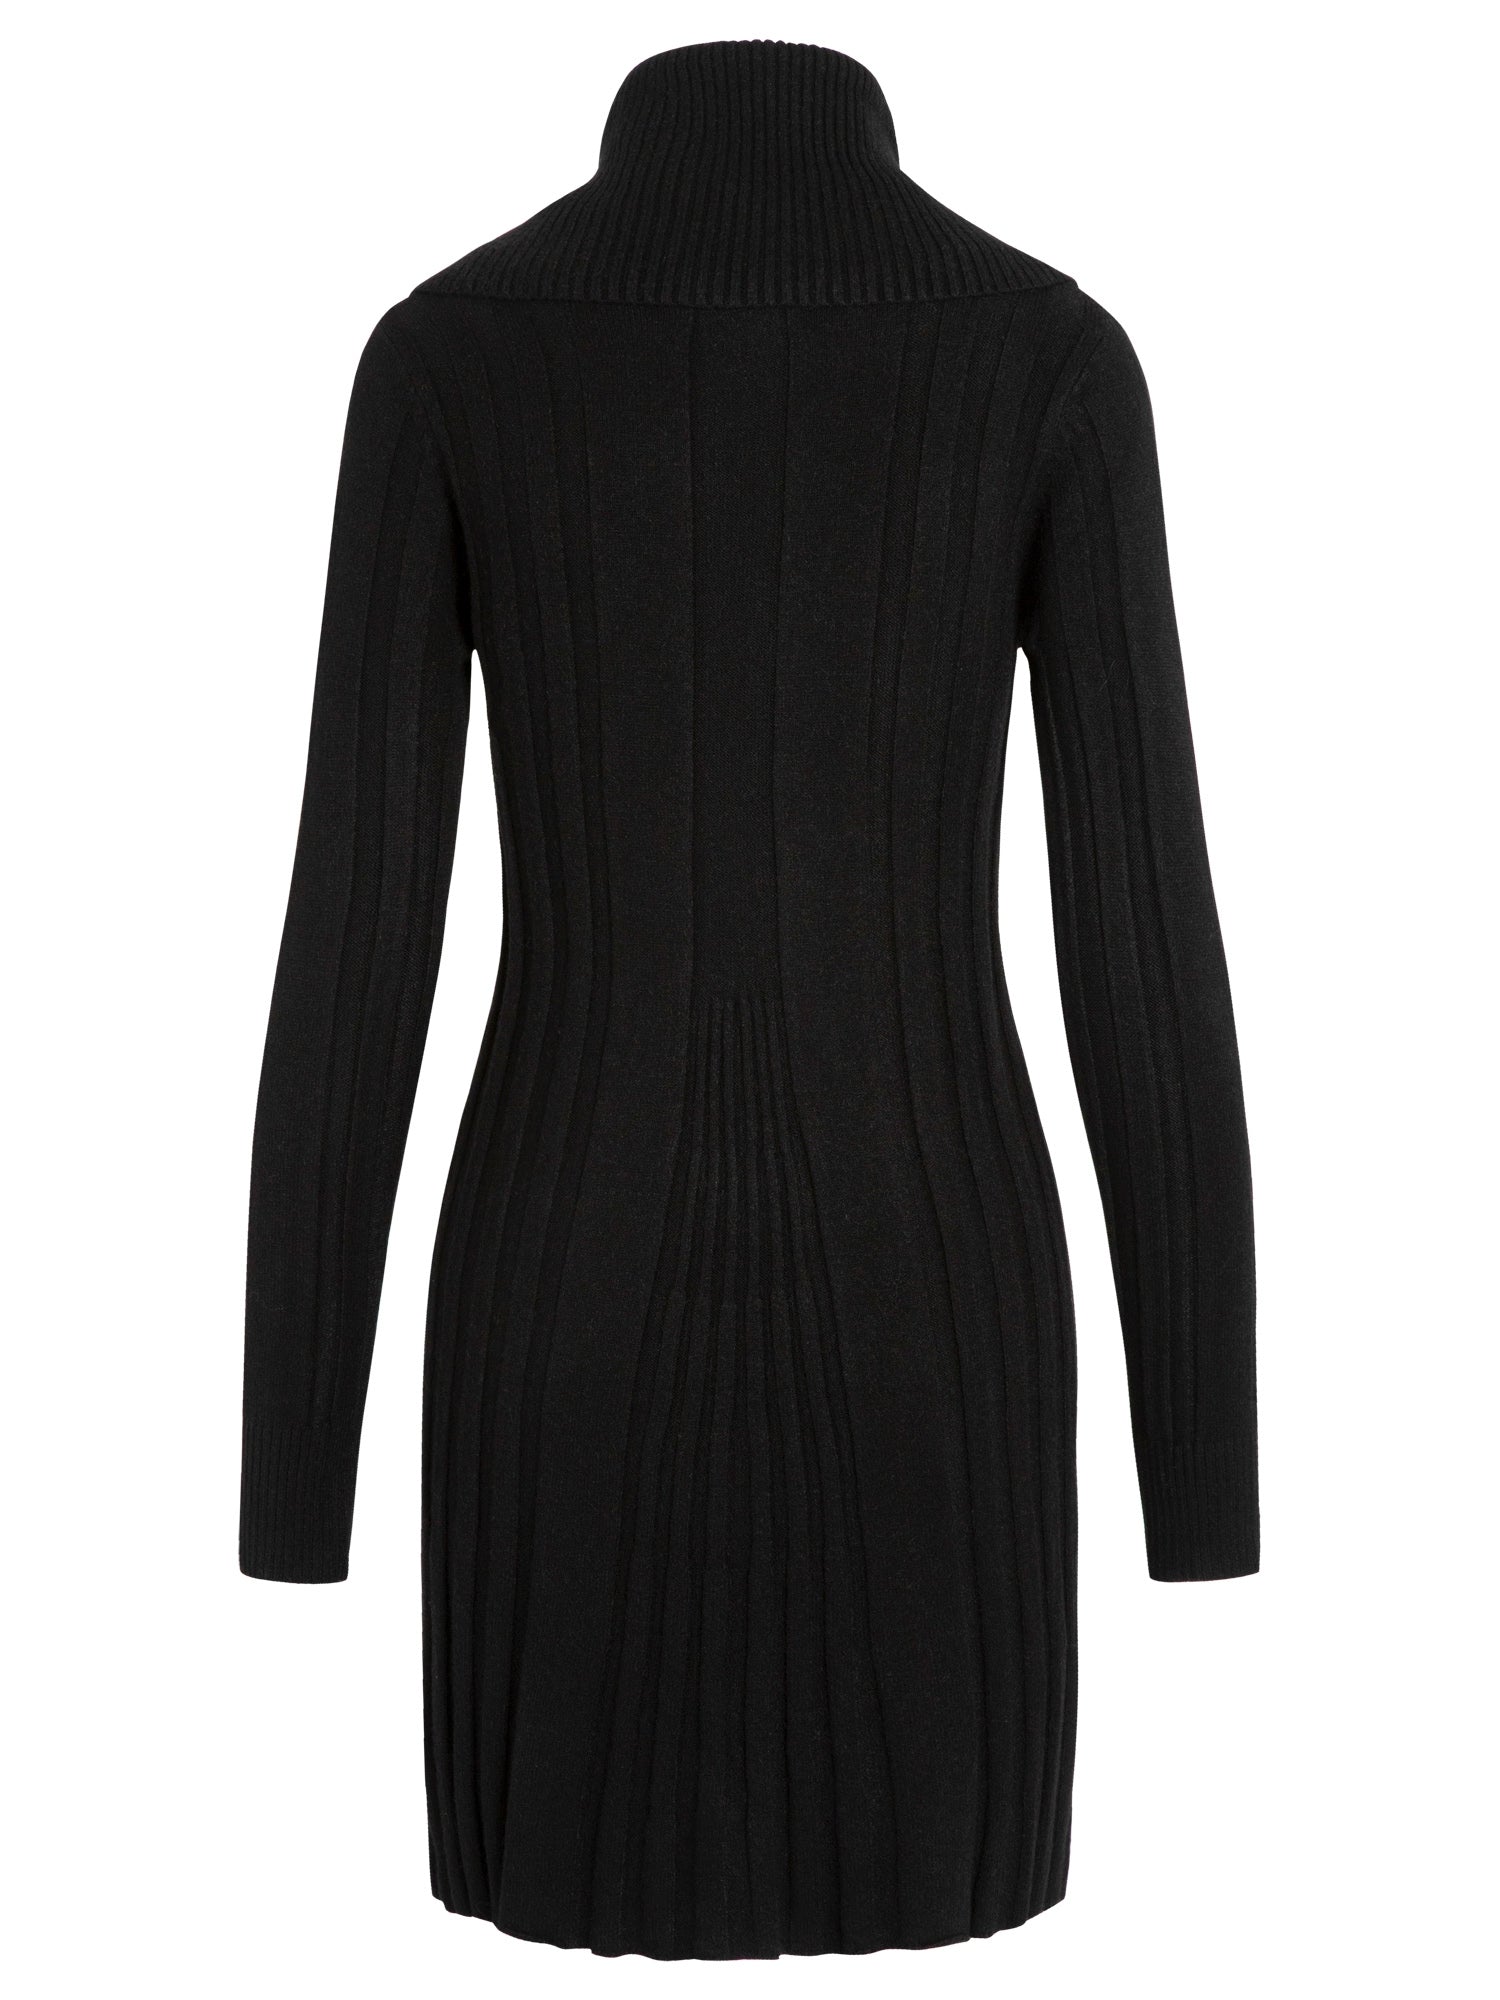 APART kuschelweiches Kleid, Strick-Kleid, einfach zum Hineinschlüpfen, mit Kaschmir-Anteil | schwarz